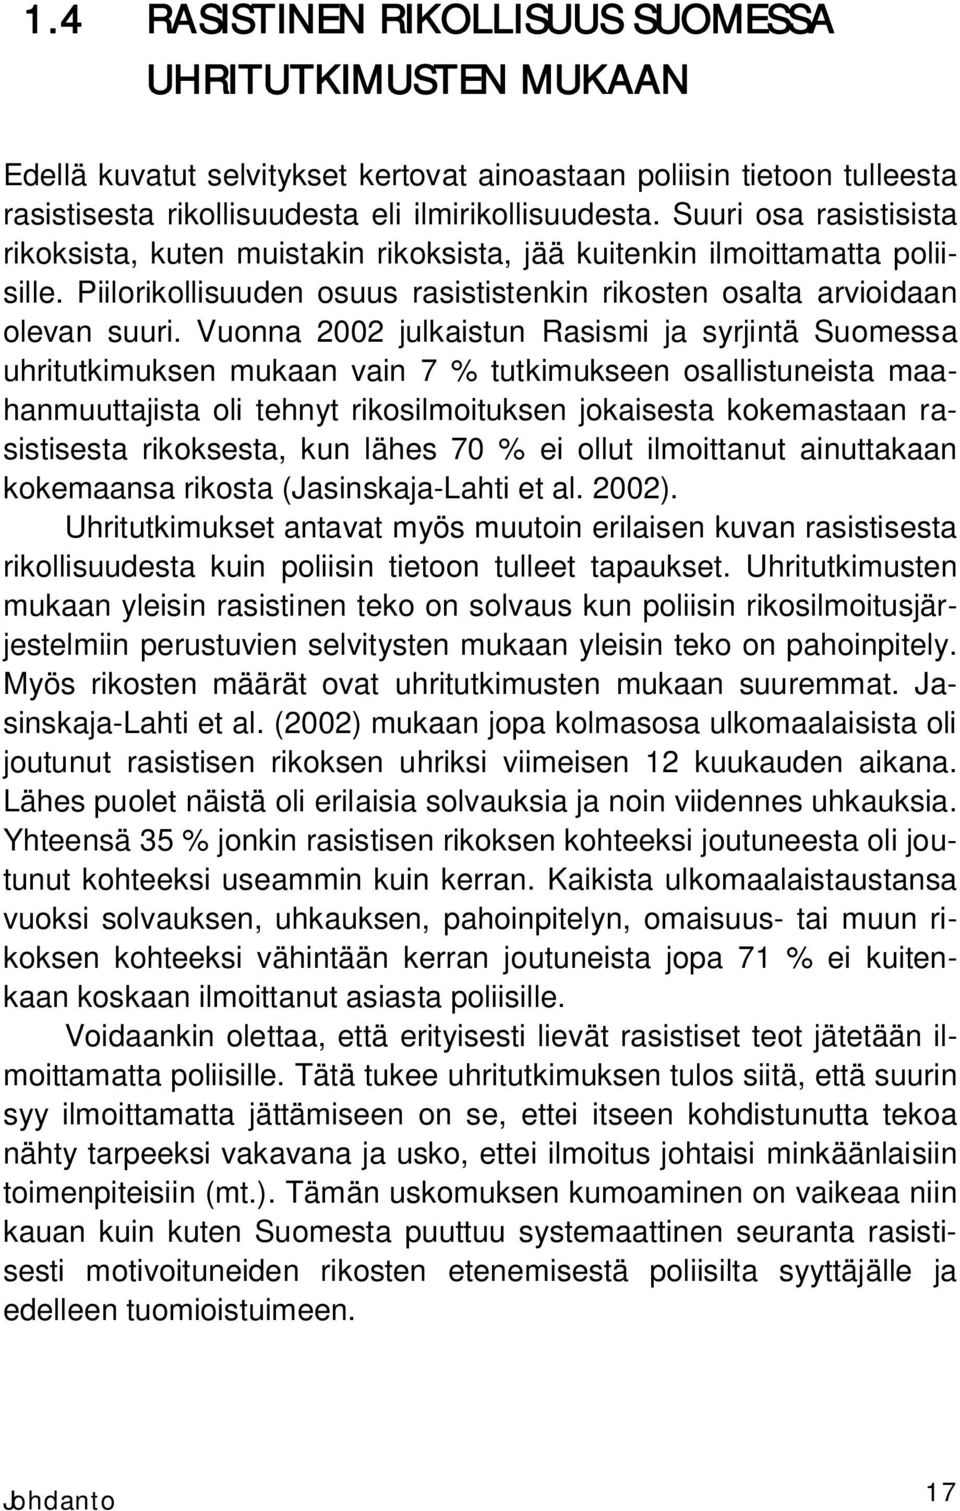 Vuonna 2002 julkaistun Rasismi ja syrjintä Suomessa uhritutkimuksen mukaan vain 7 % tutkimukseen osallistuneista maahanmuuttajista oli tehnyt rikosilmoituksen jokaisesta kokemastaan rasistisesta